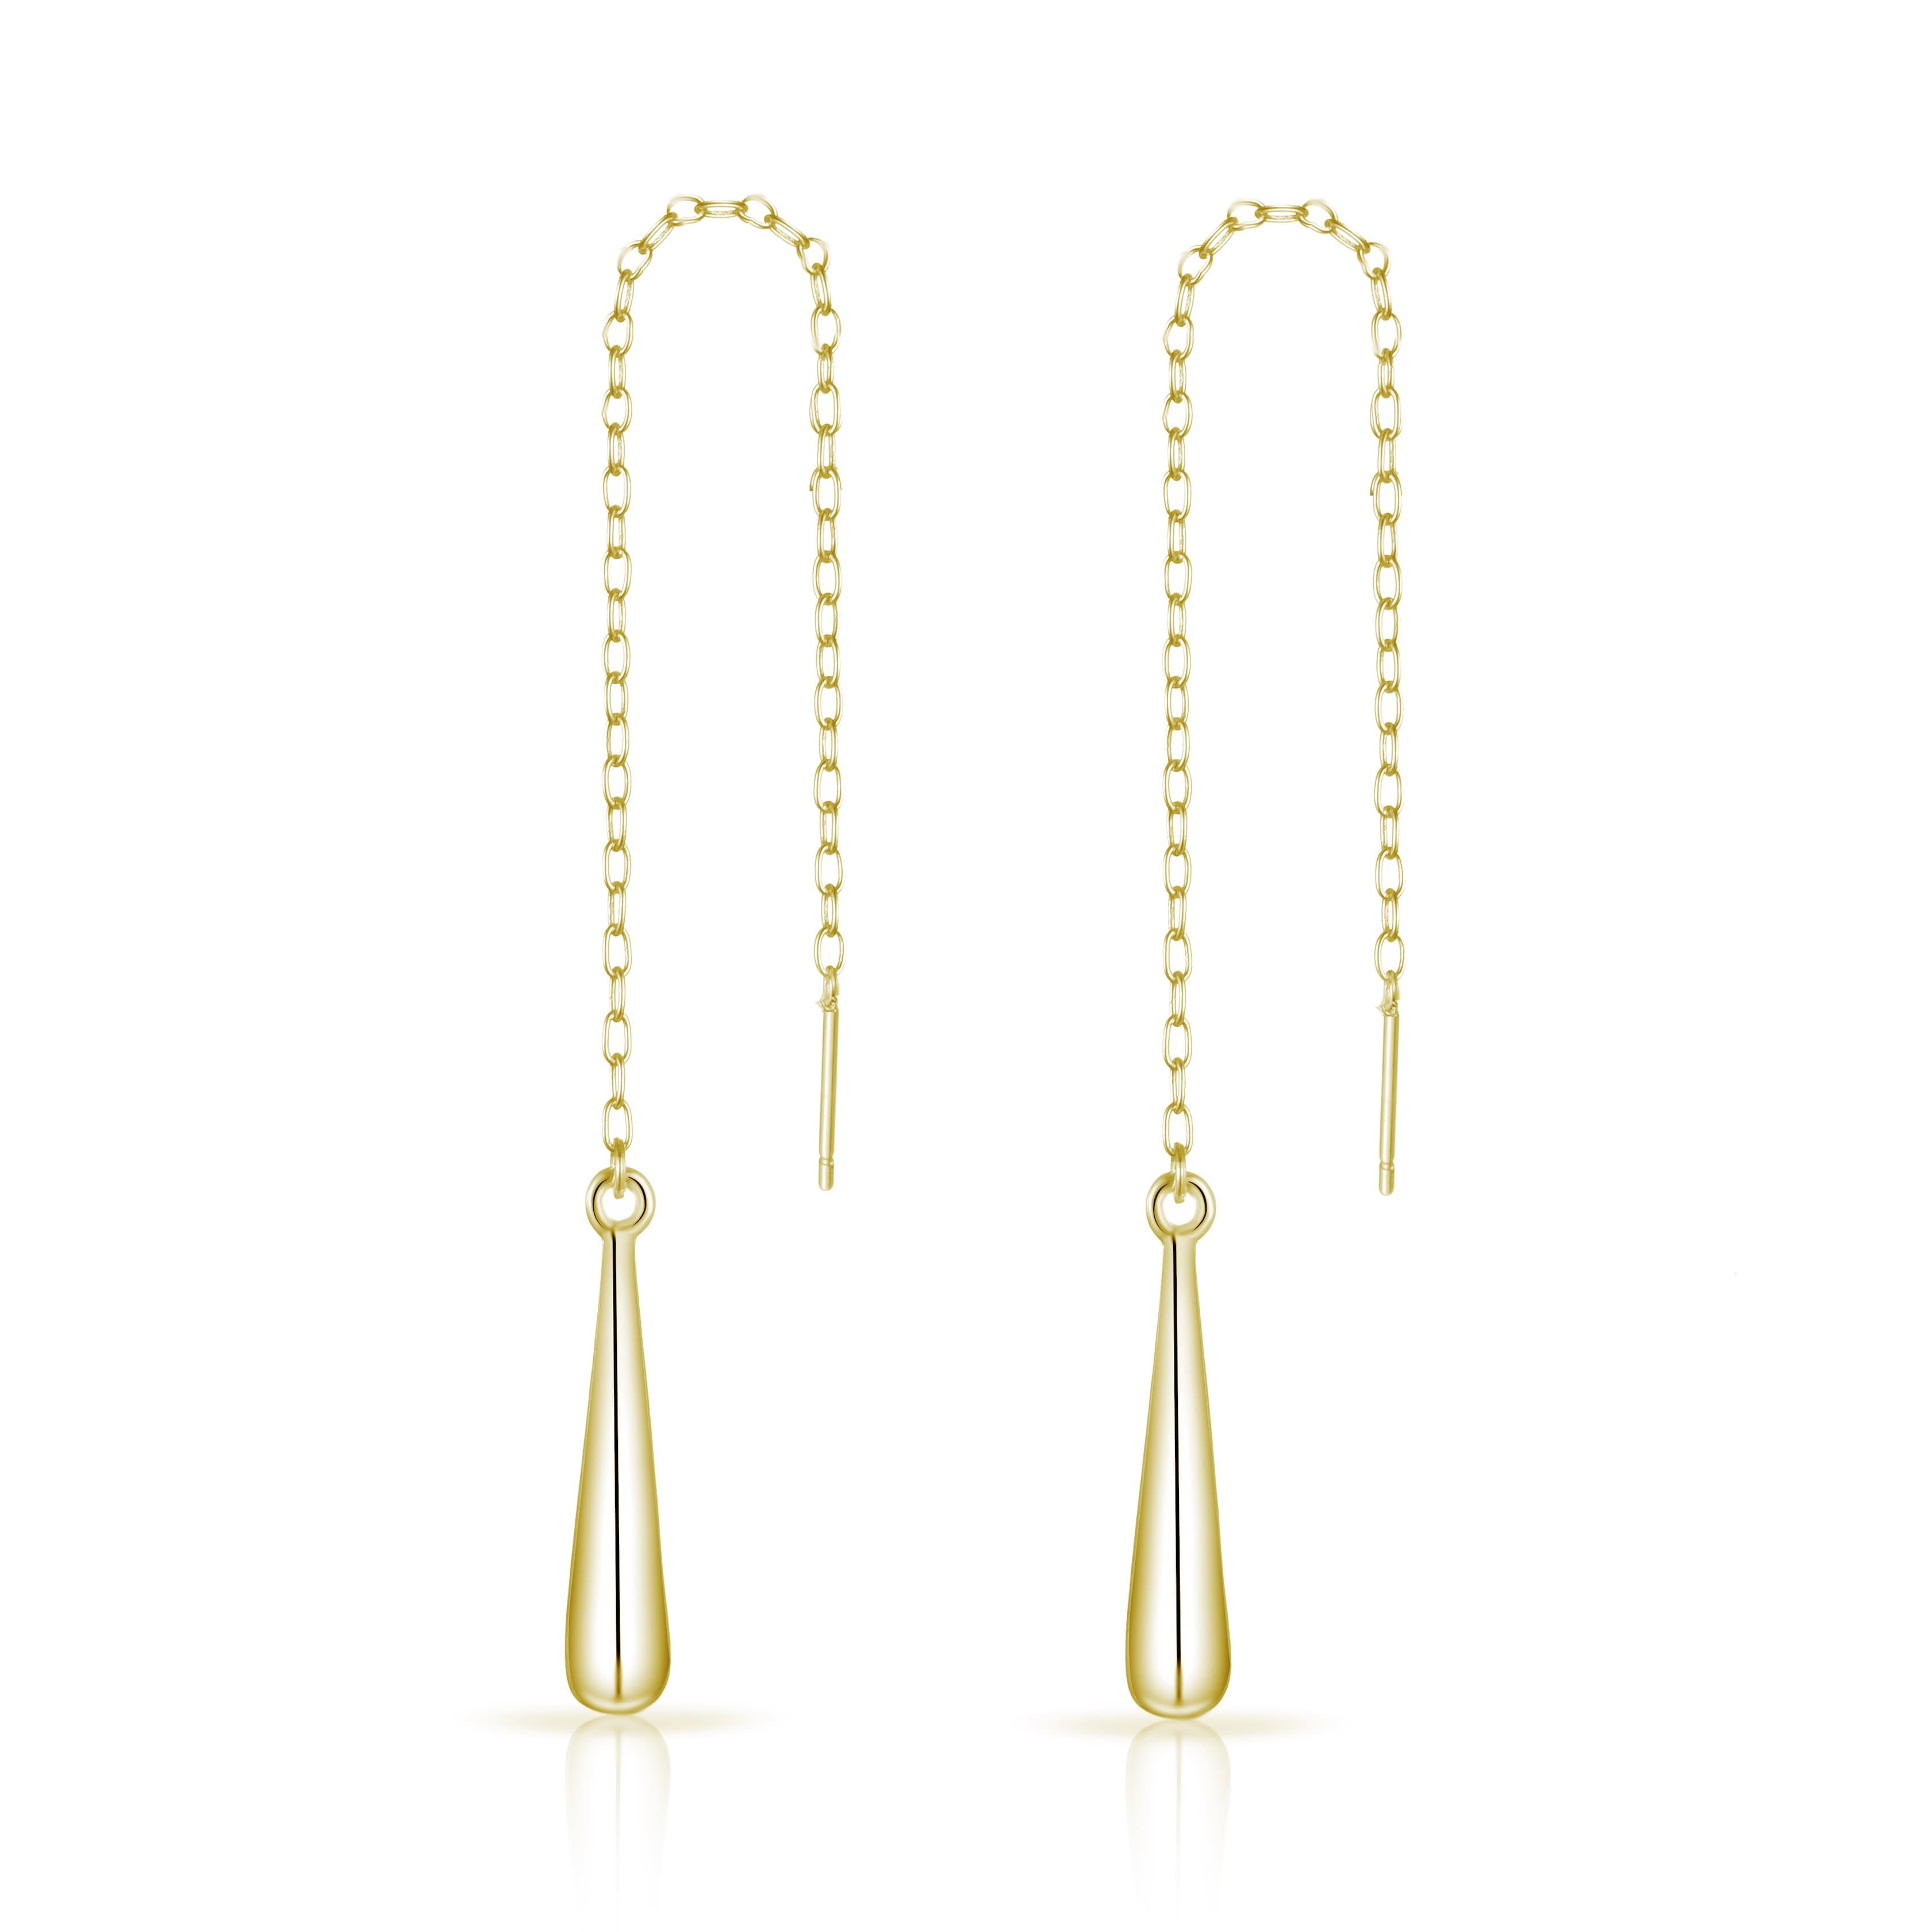 Gold Plated Sterling Silver Teardrop Thread Earrings by Philip Jones Jewellery